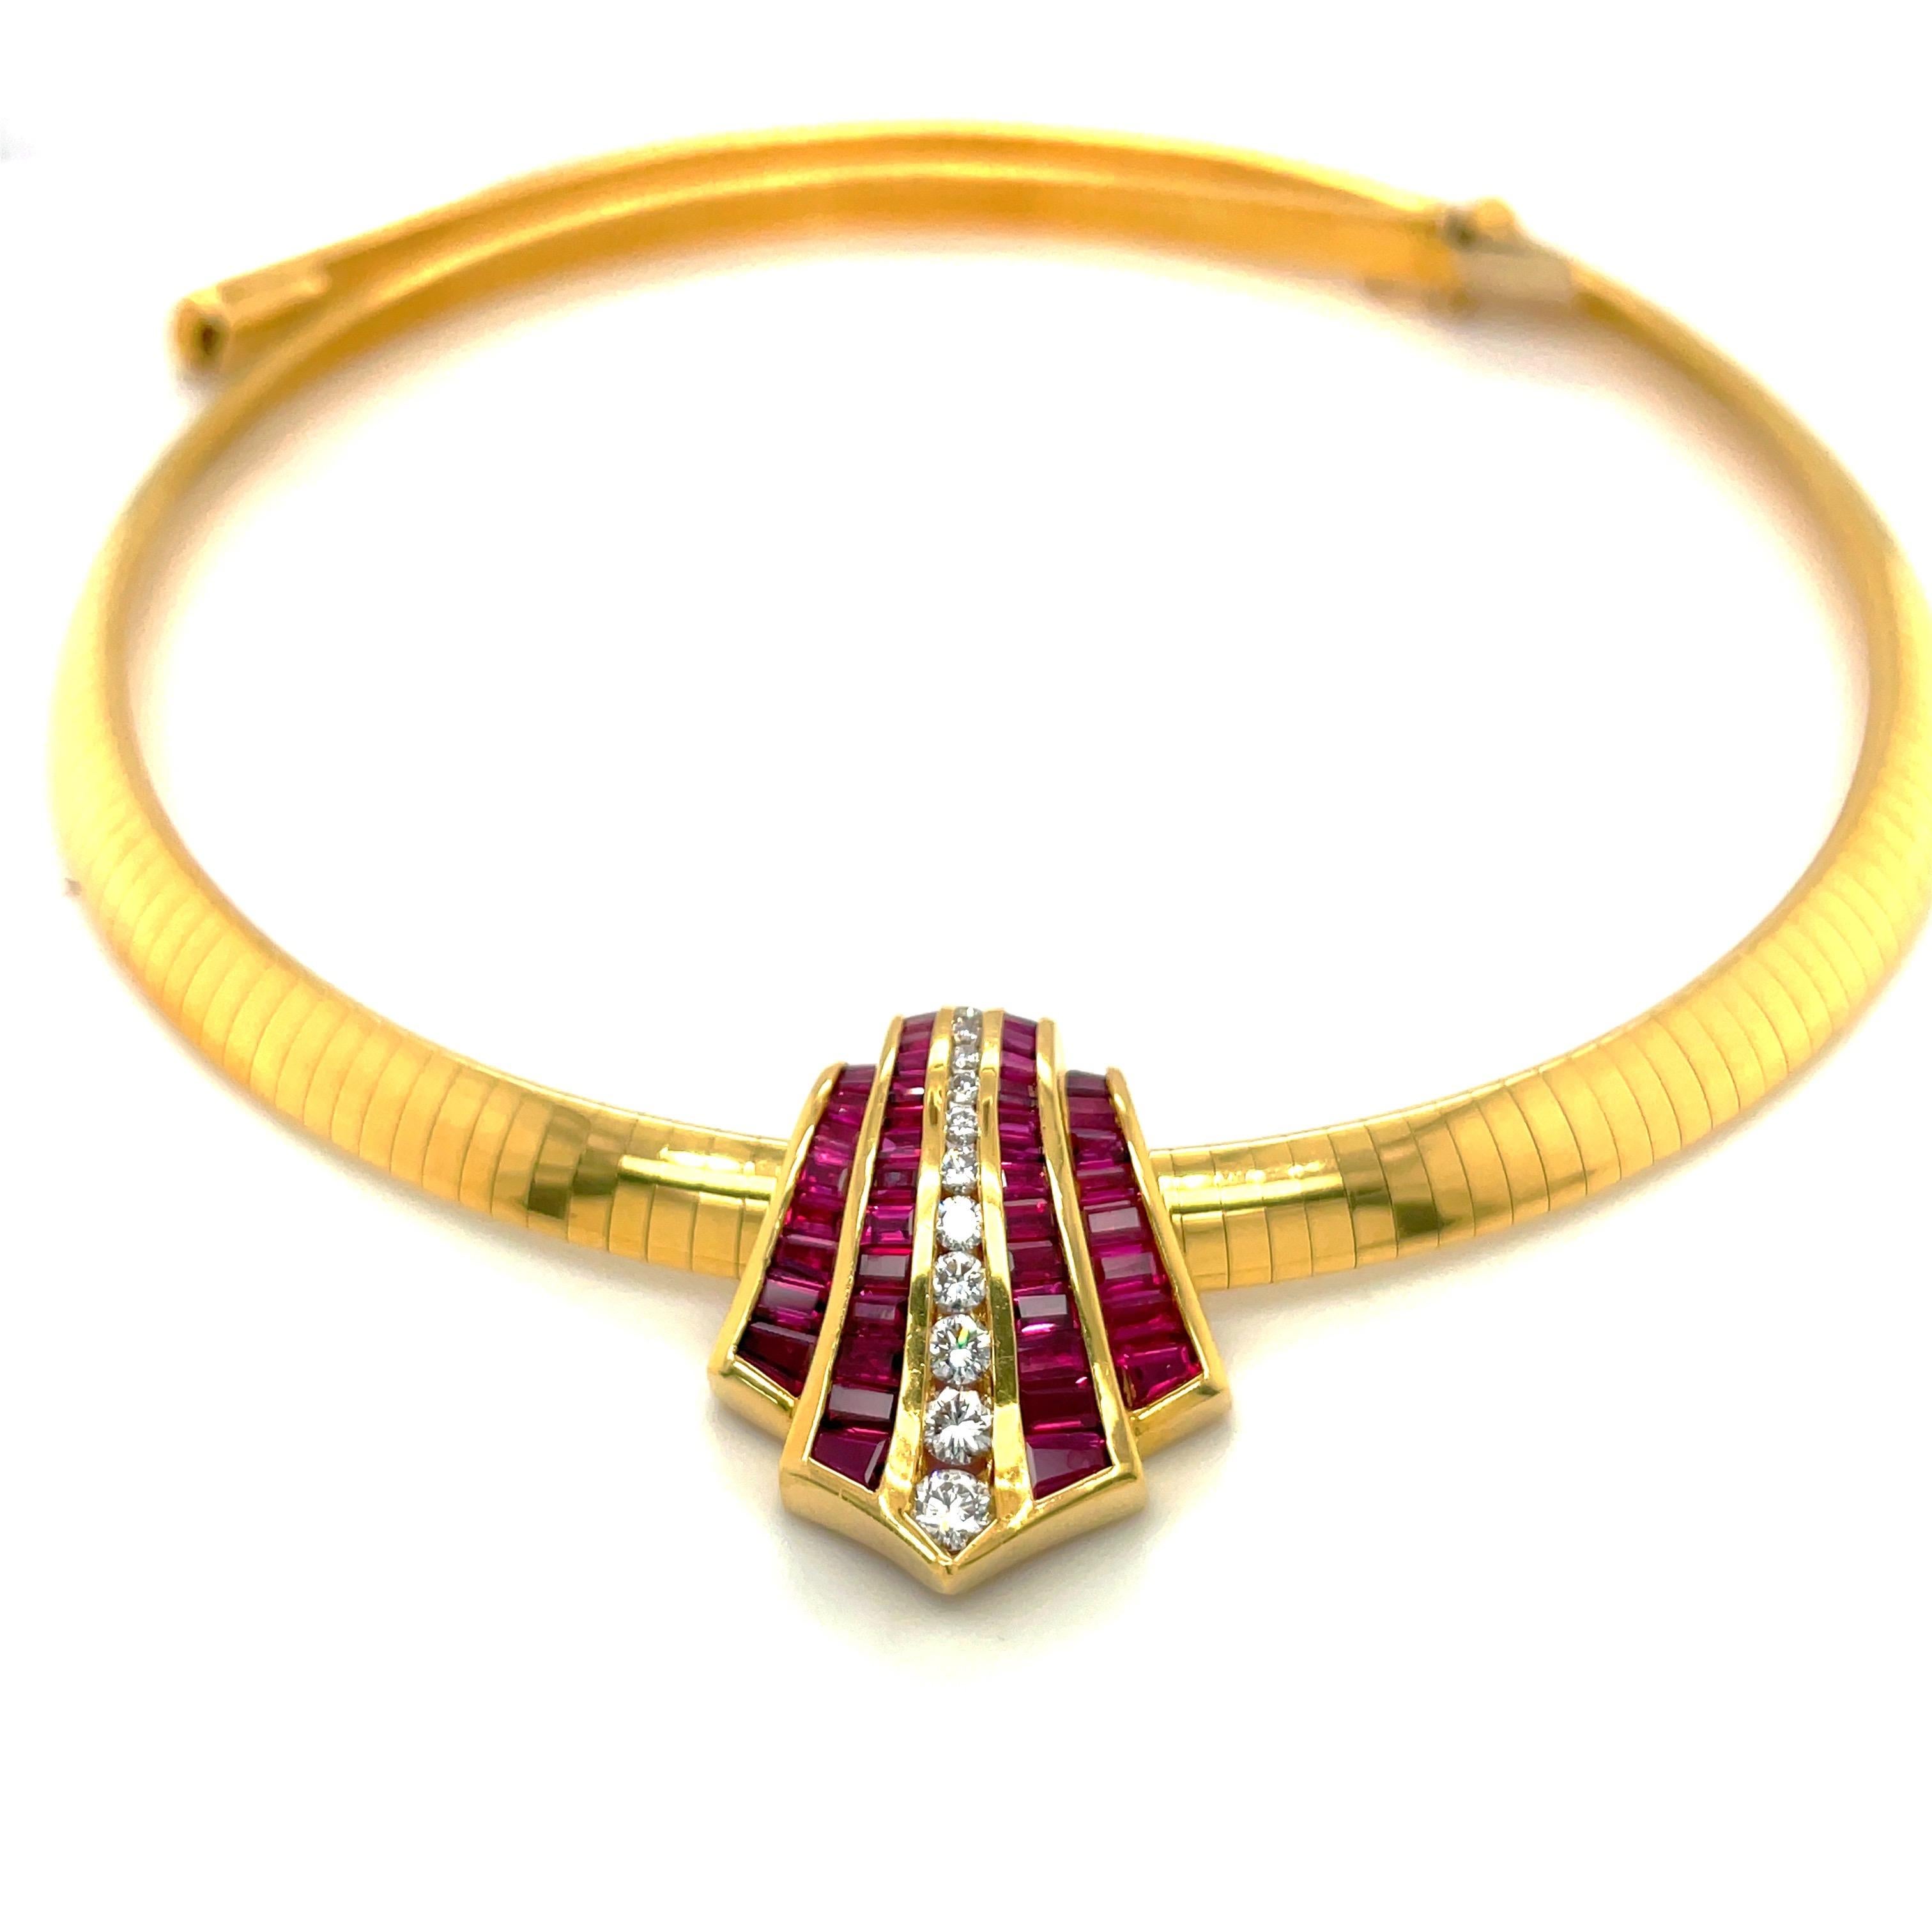 Entworfen von Charles Krypell, Juwelier seit 1976. Diese Halskette mit Anhänger ist ein perfektes Beispiel für feine Handwerkskunst mit unsichtbar gefassten Rubinen im Baguetteschliff und runden Brillanten. Die 4 Rubinabschnitte und eine Reihe